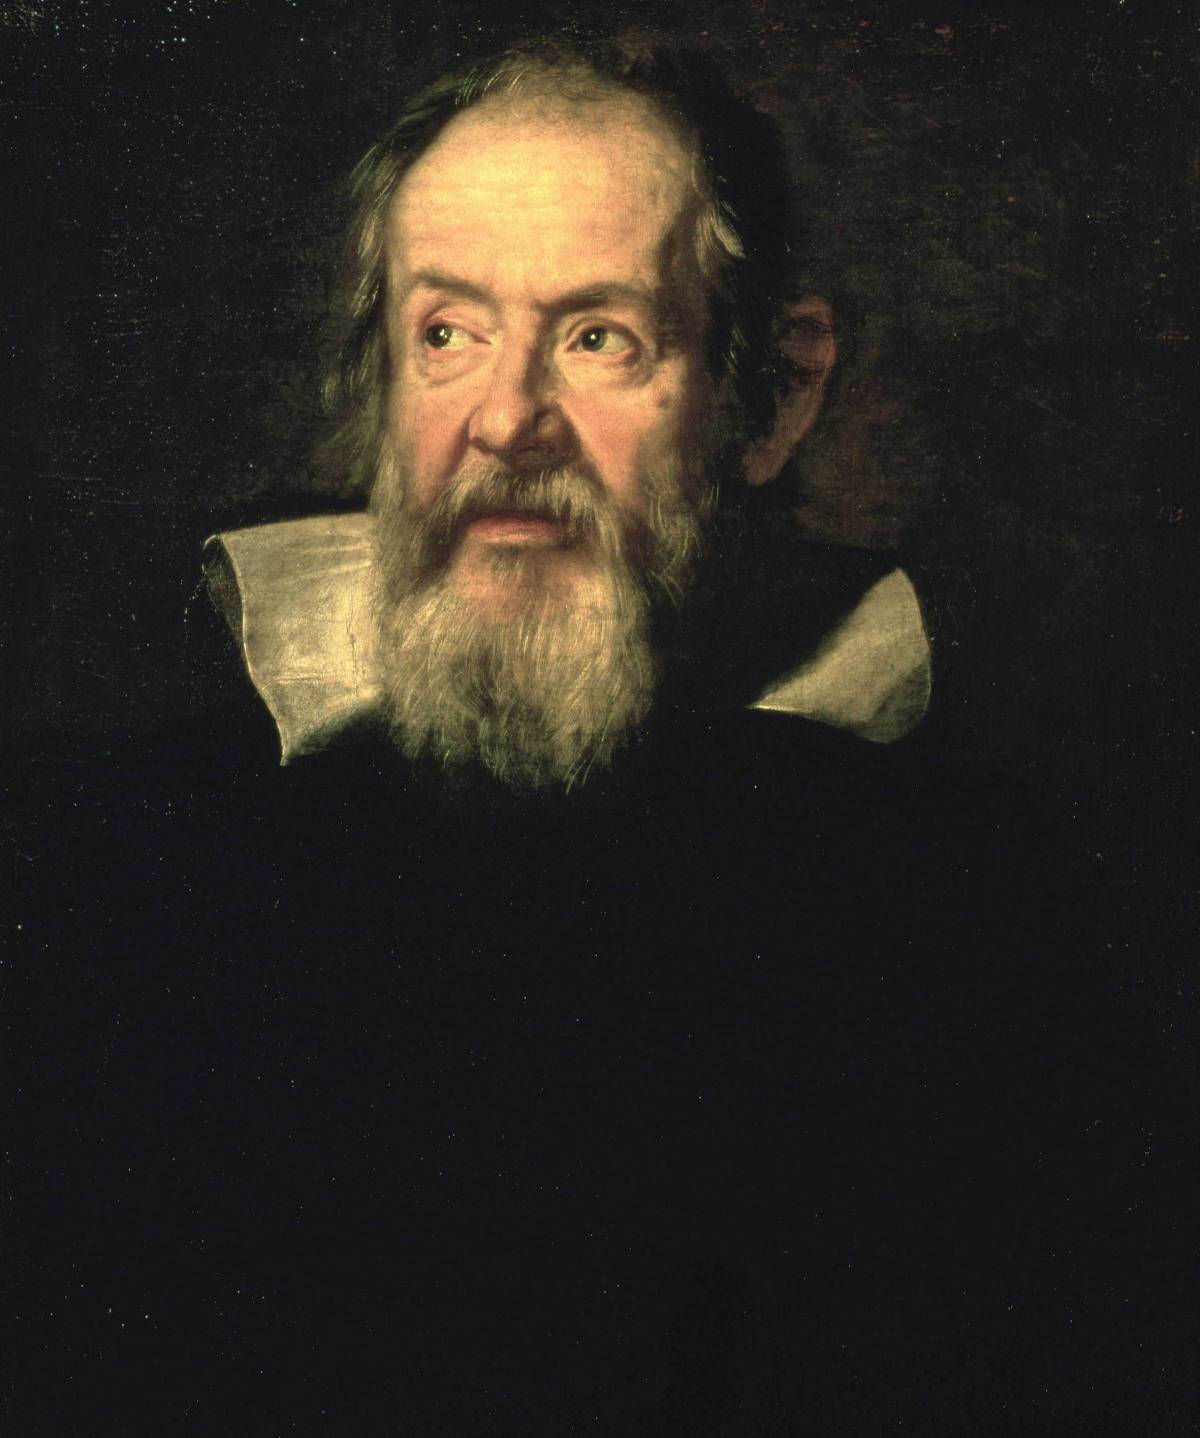 Galileo: datemi una lente e rivoluzionerò l'universo